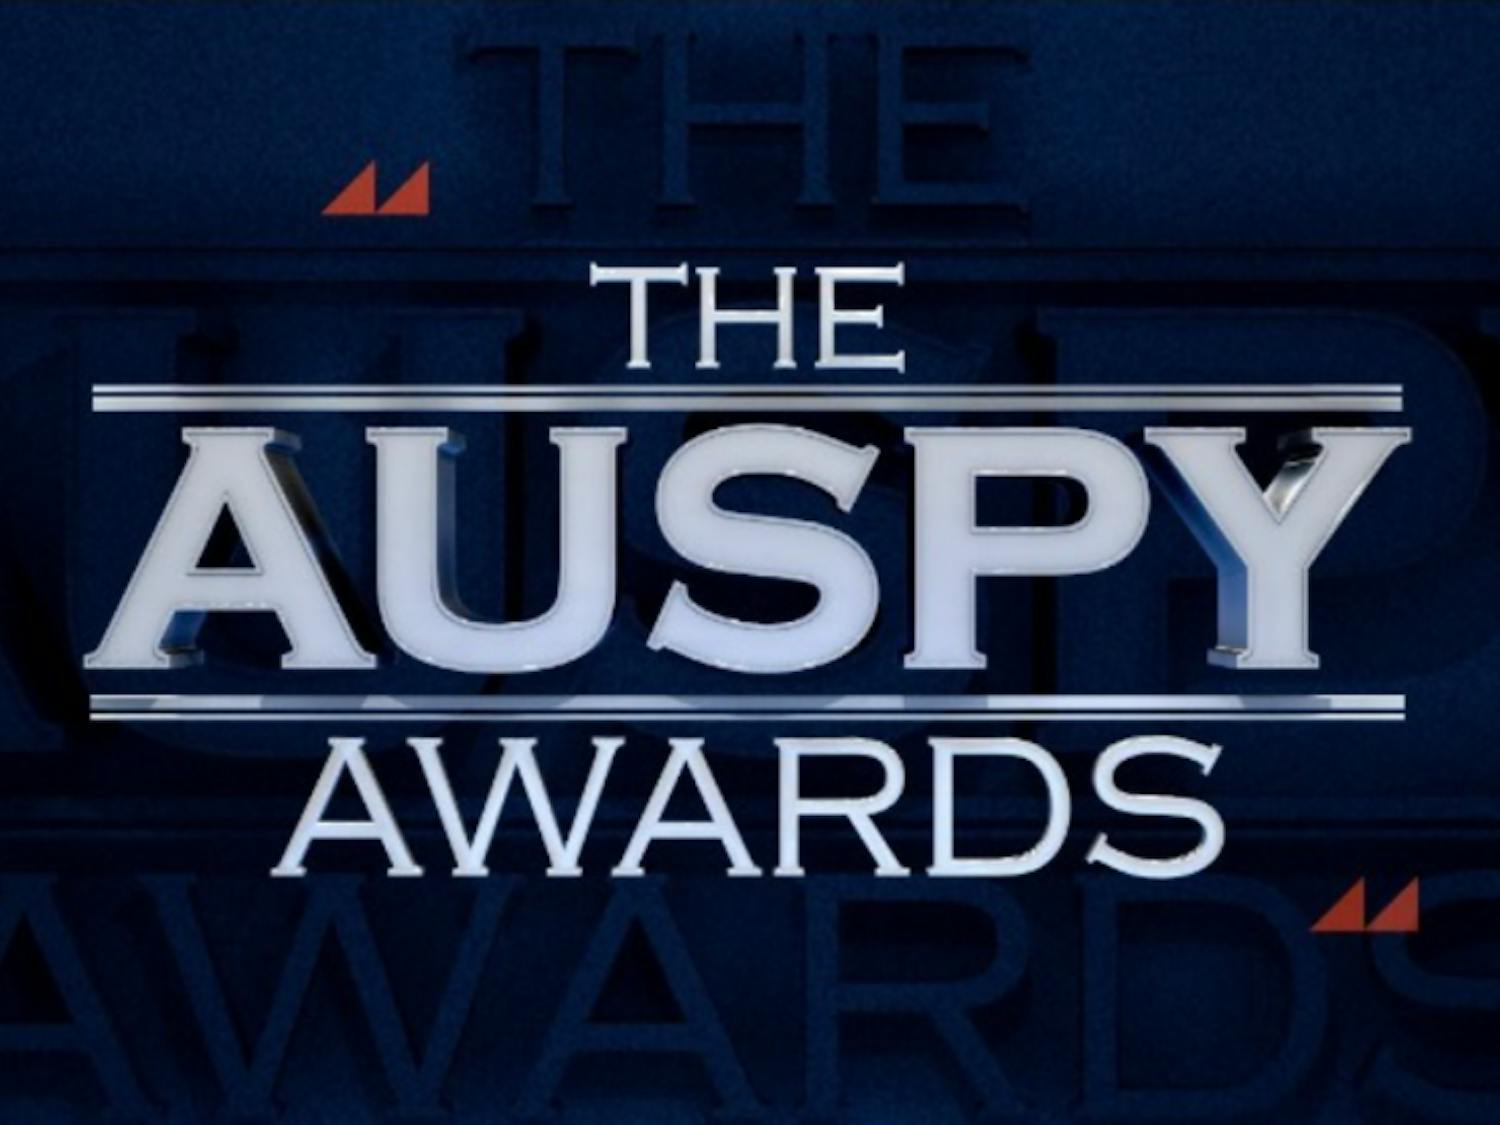 The AUSPY Awards